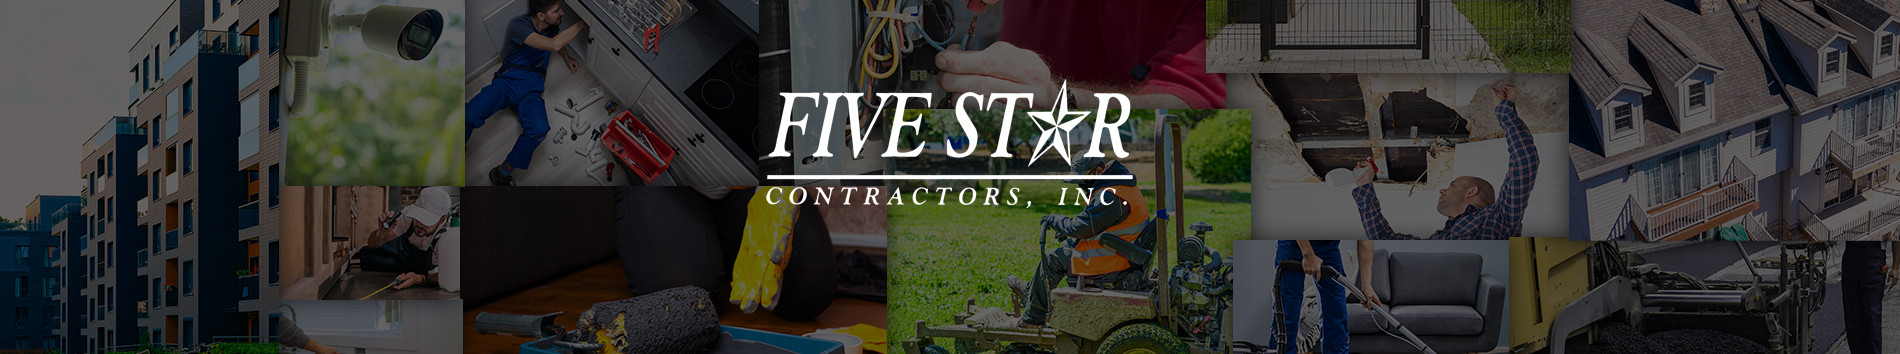 Five Star Contractors, Inc.